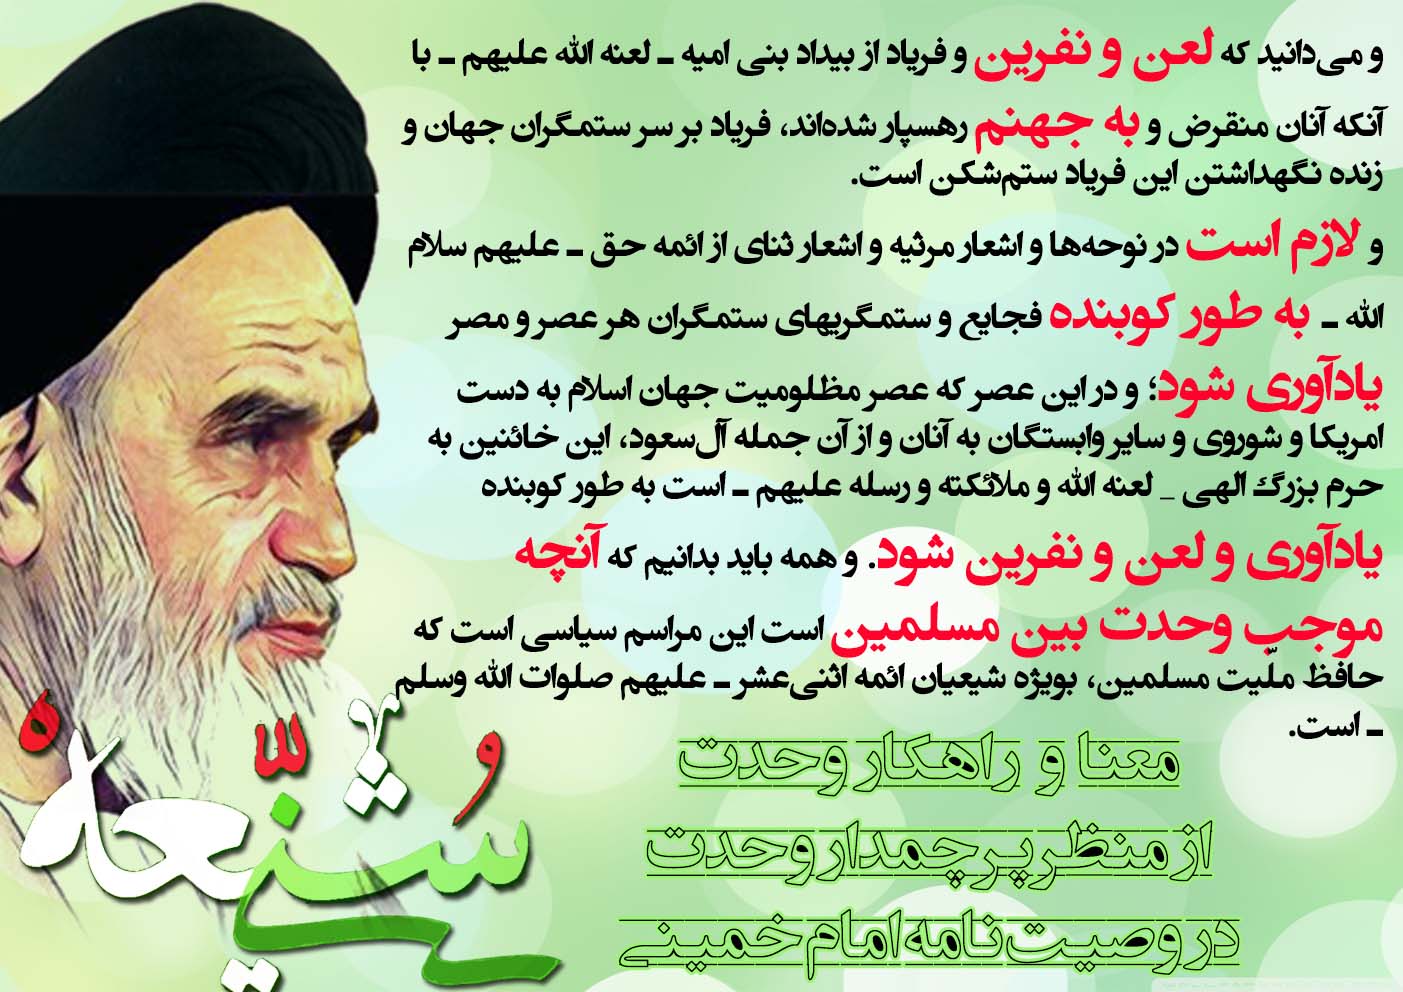 پوستر : معنا و راهکار وحدت از منظر پرچمدار وحدت در وصیت نامه امام خمینی